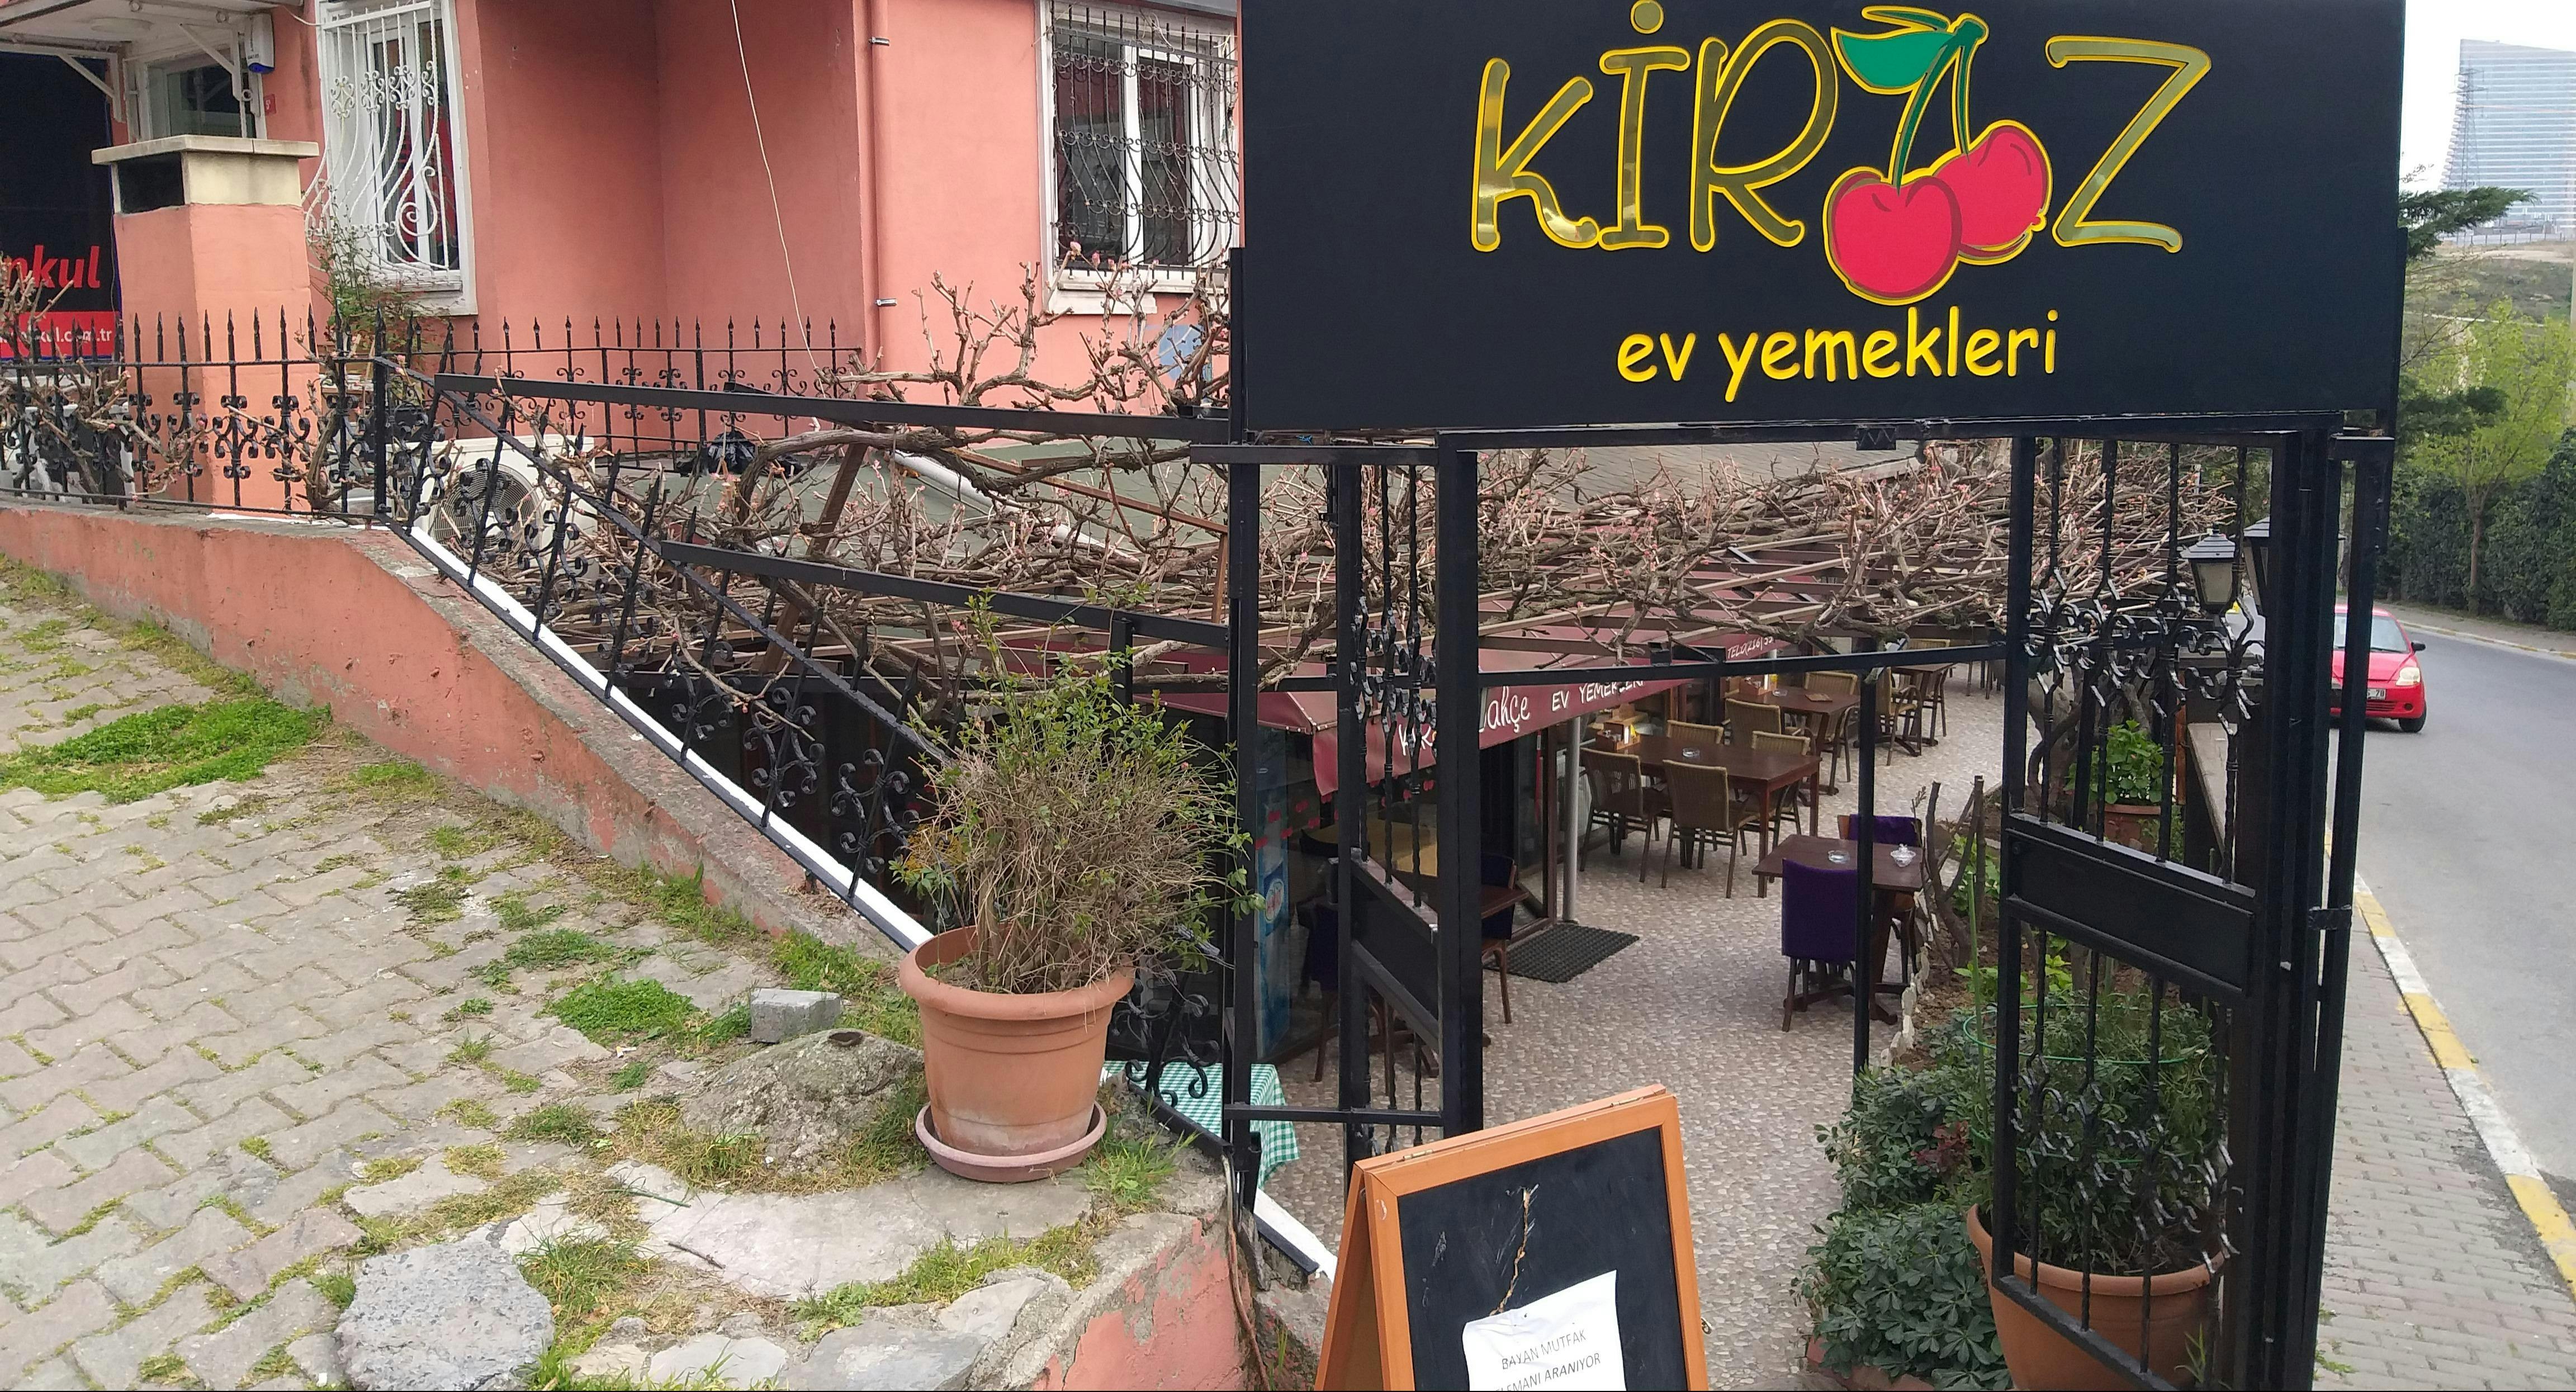 Ümraniye, İstanbul şehrindeki Kiraz Bahçe restoranının fotoğrafı